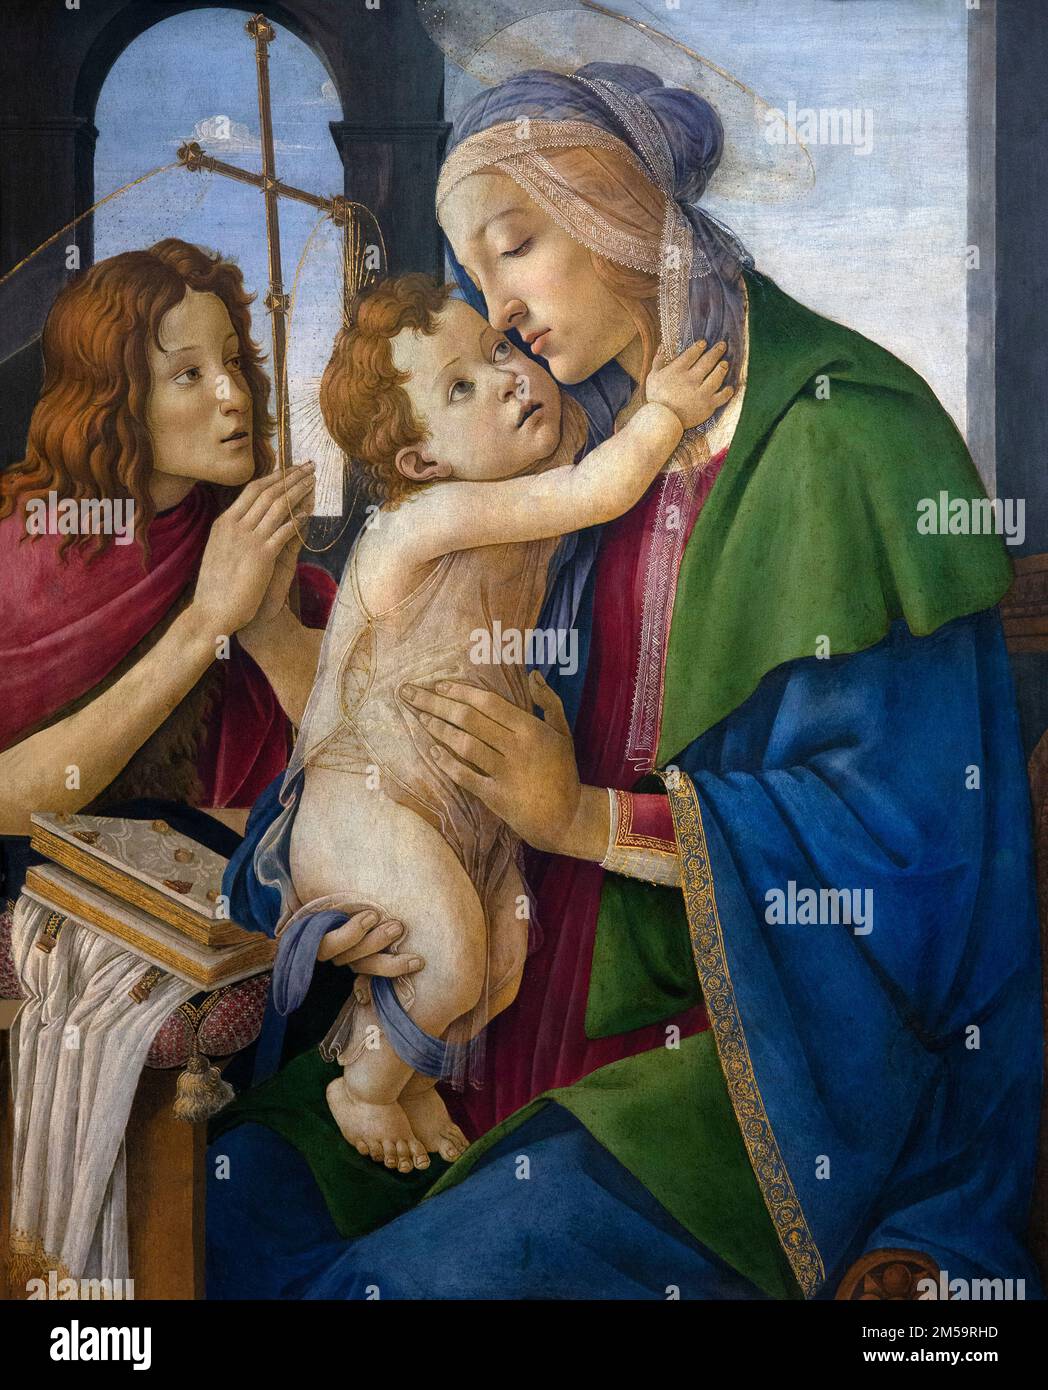 La Vergine col Bambino con il giovane San Giovanni Battista, Sandro Botticelli, circa 1495-1500, Gemaldegalerie Alte Meister, Dresda, Germania, Europa Foto Stock